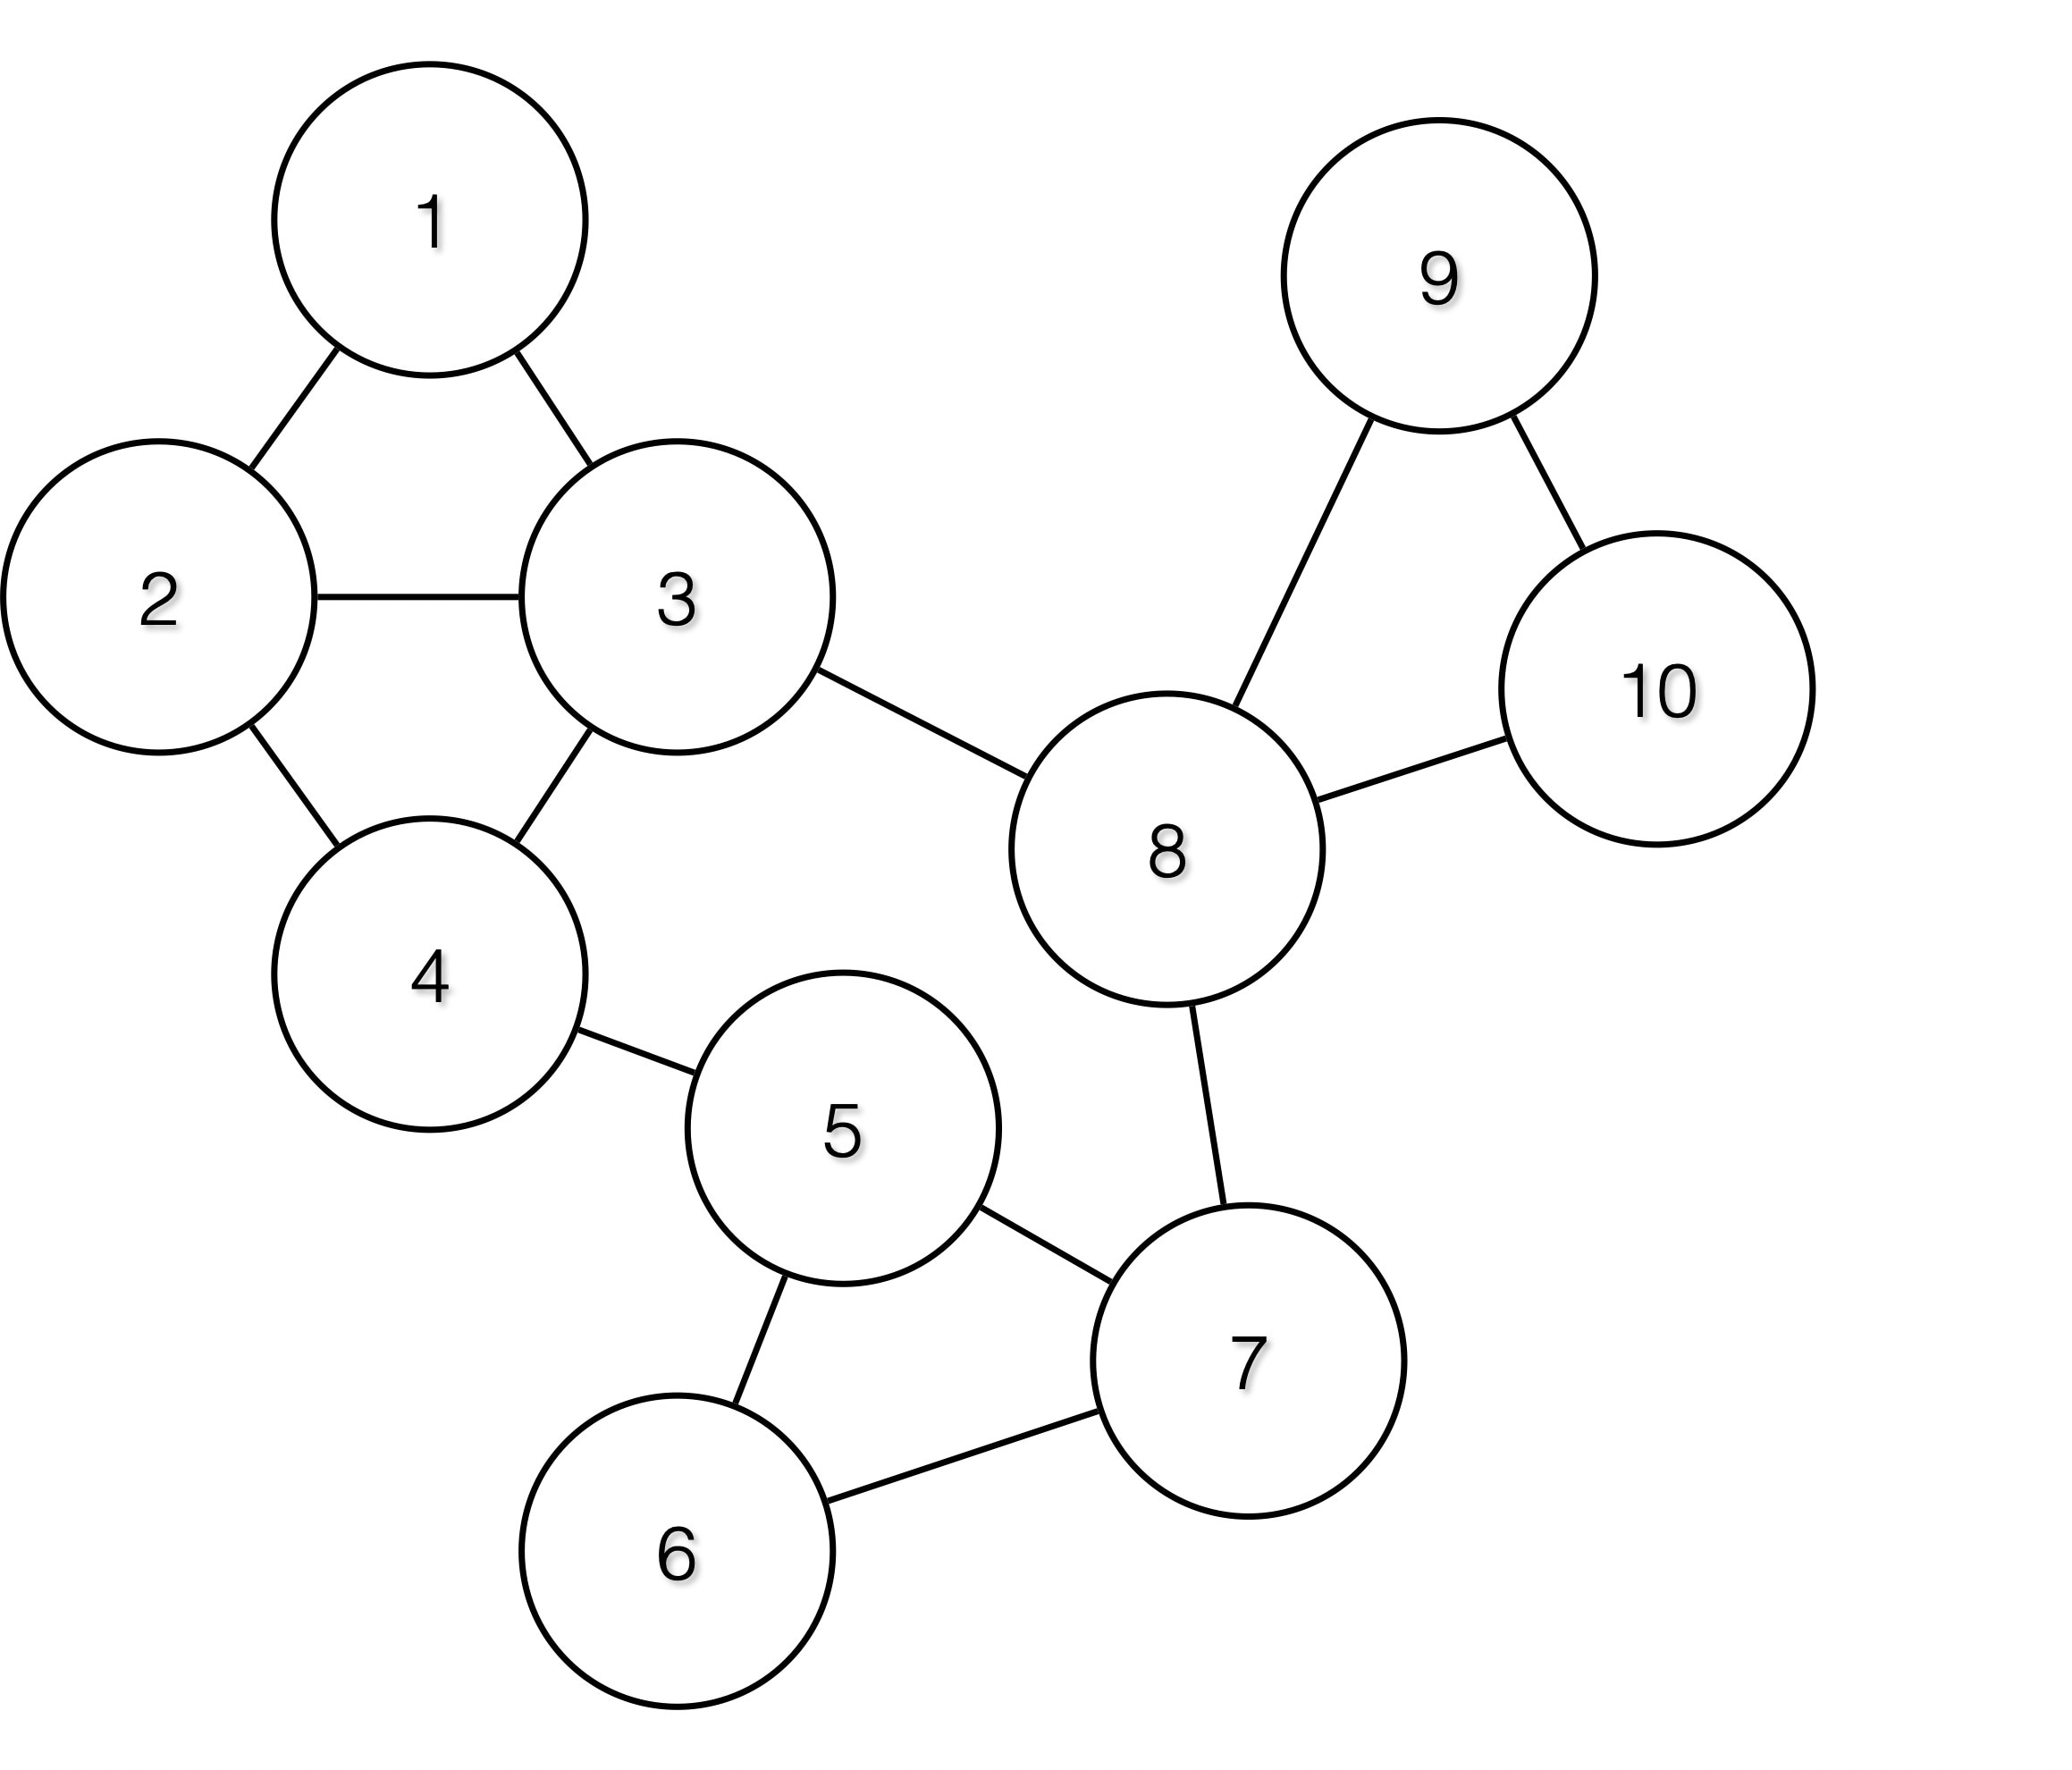 Input graph